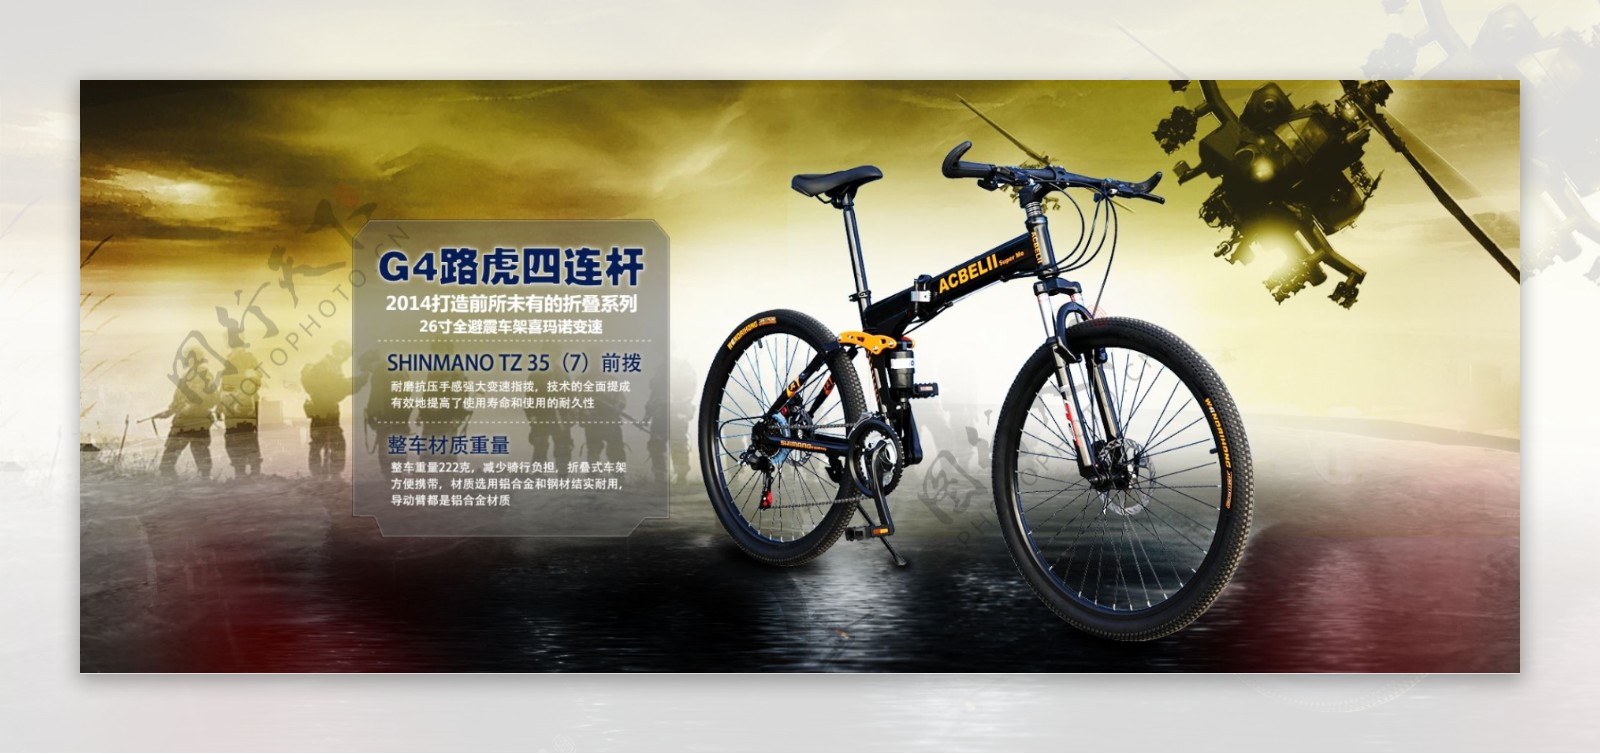 自行车首屏宣传图